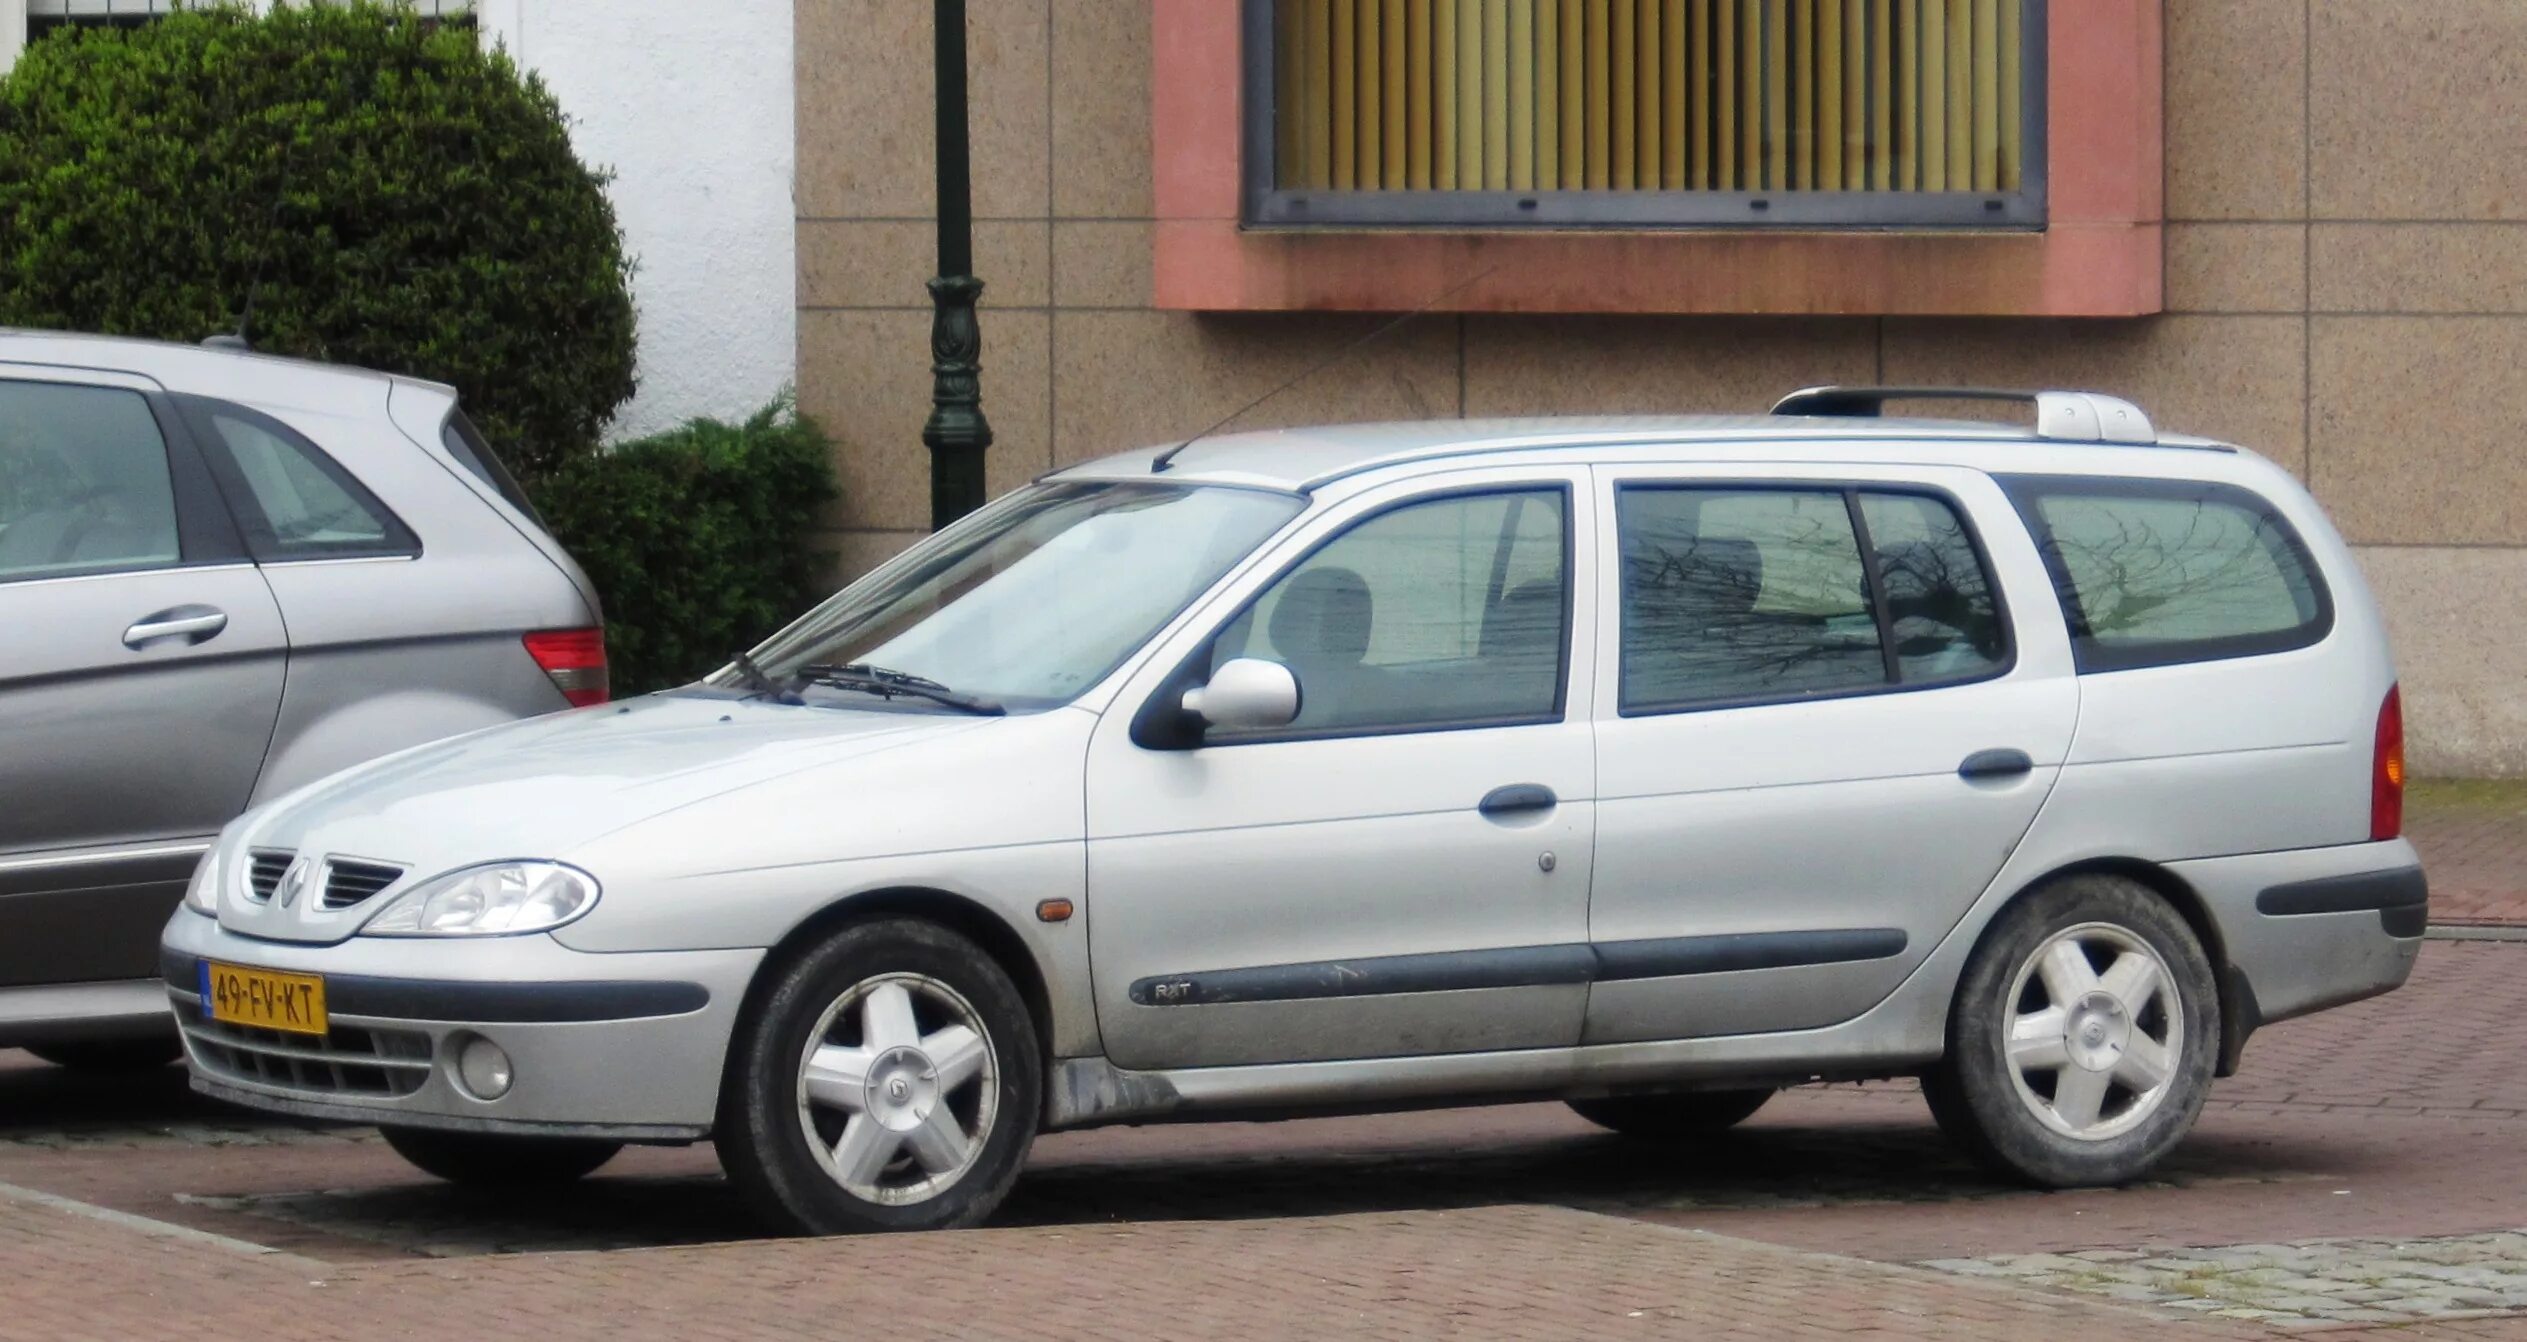 Renault Megane 2000. Renault Megane 1 2000. Рено Меган 2002 универсал. Renault Megane Wagon 1.